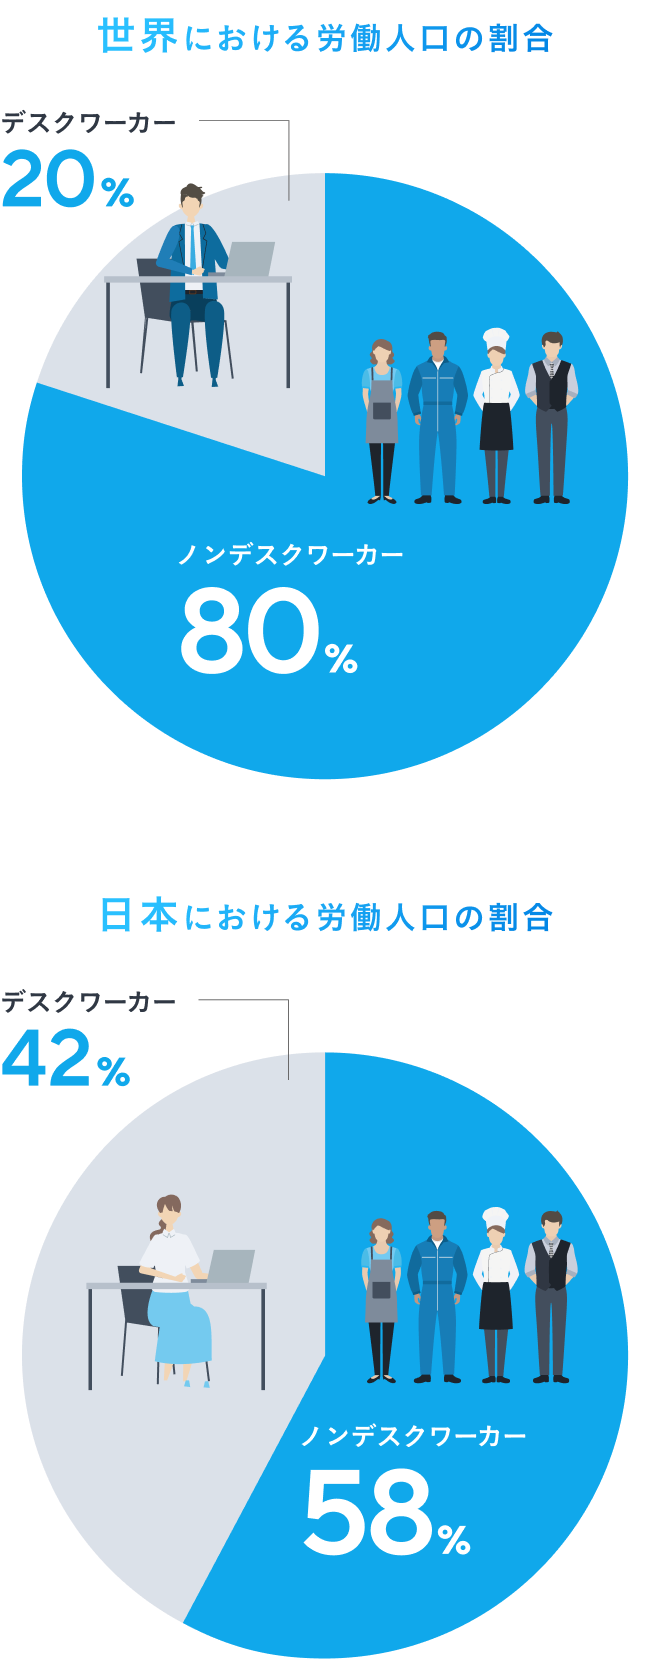 世界における労働人口の割合は、デスクワーカー20％、ノンデスクワーカー80％。日本における労働人口の割合は、デスクワーカー42％、ノンデスクワーカー58％。